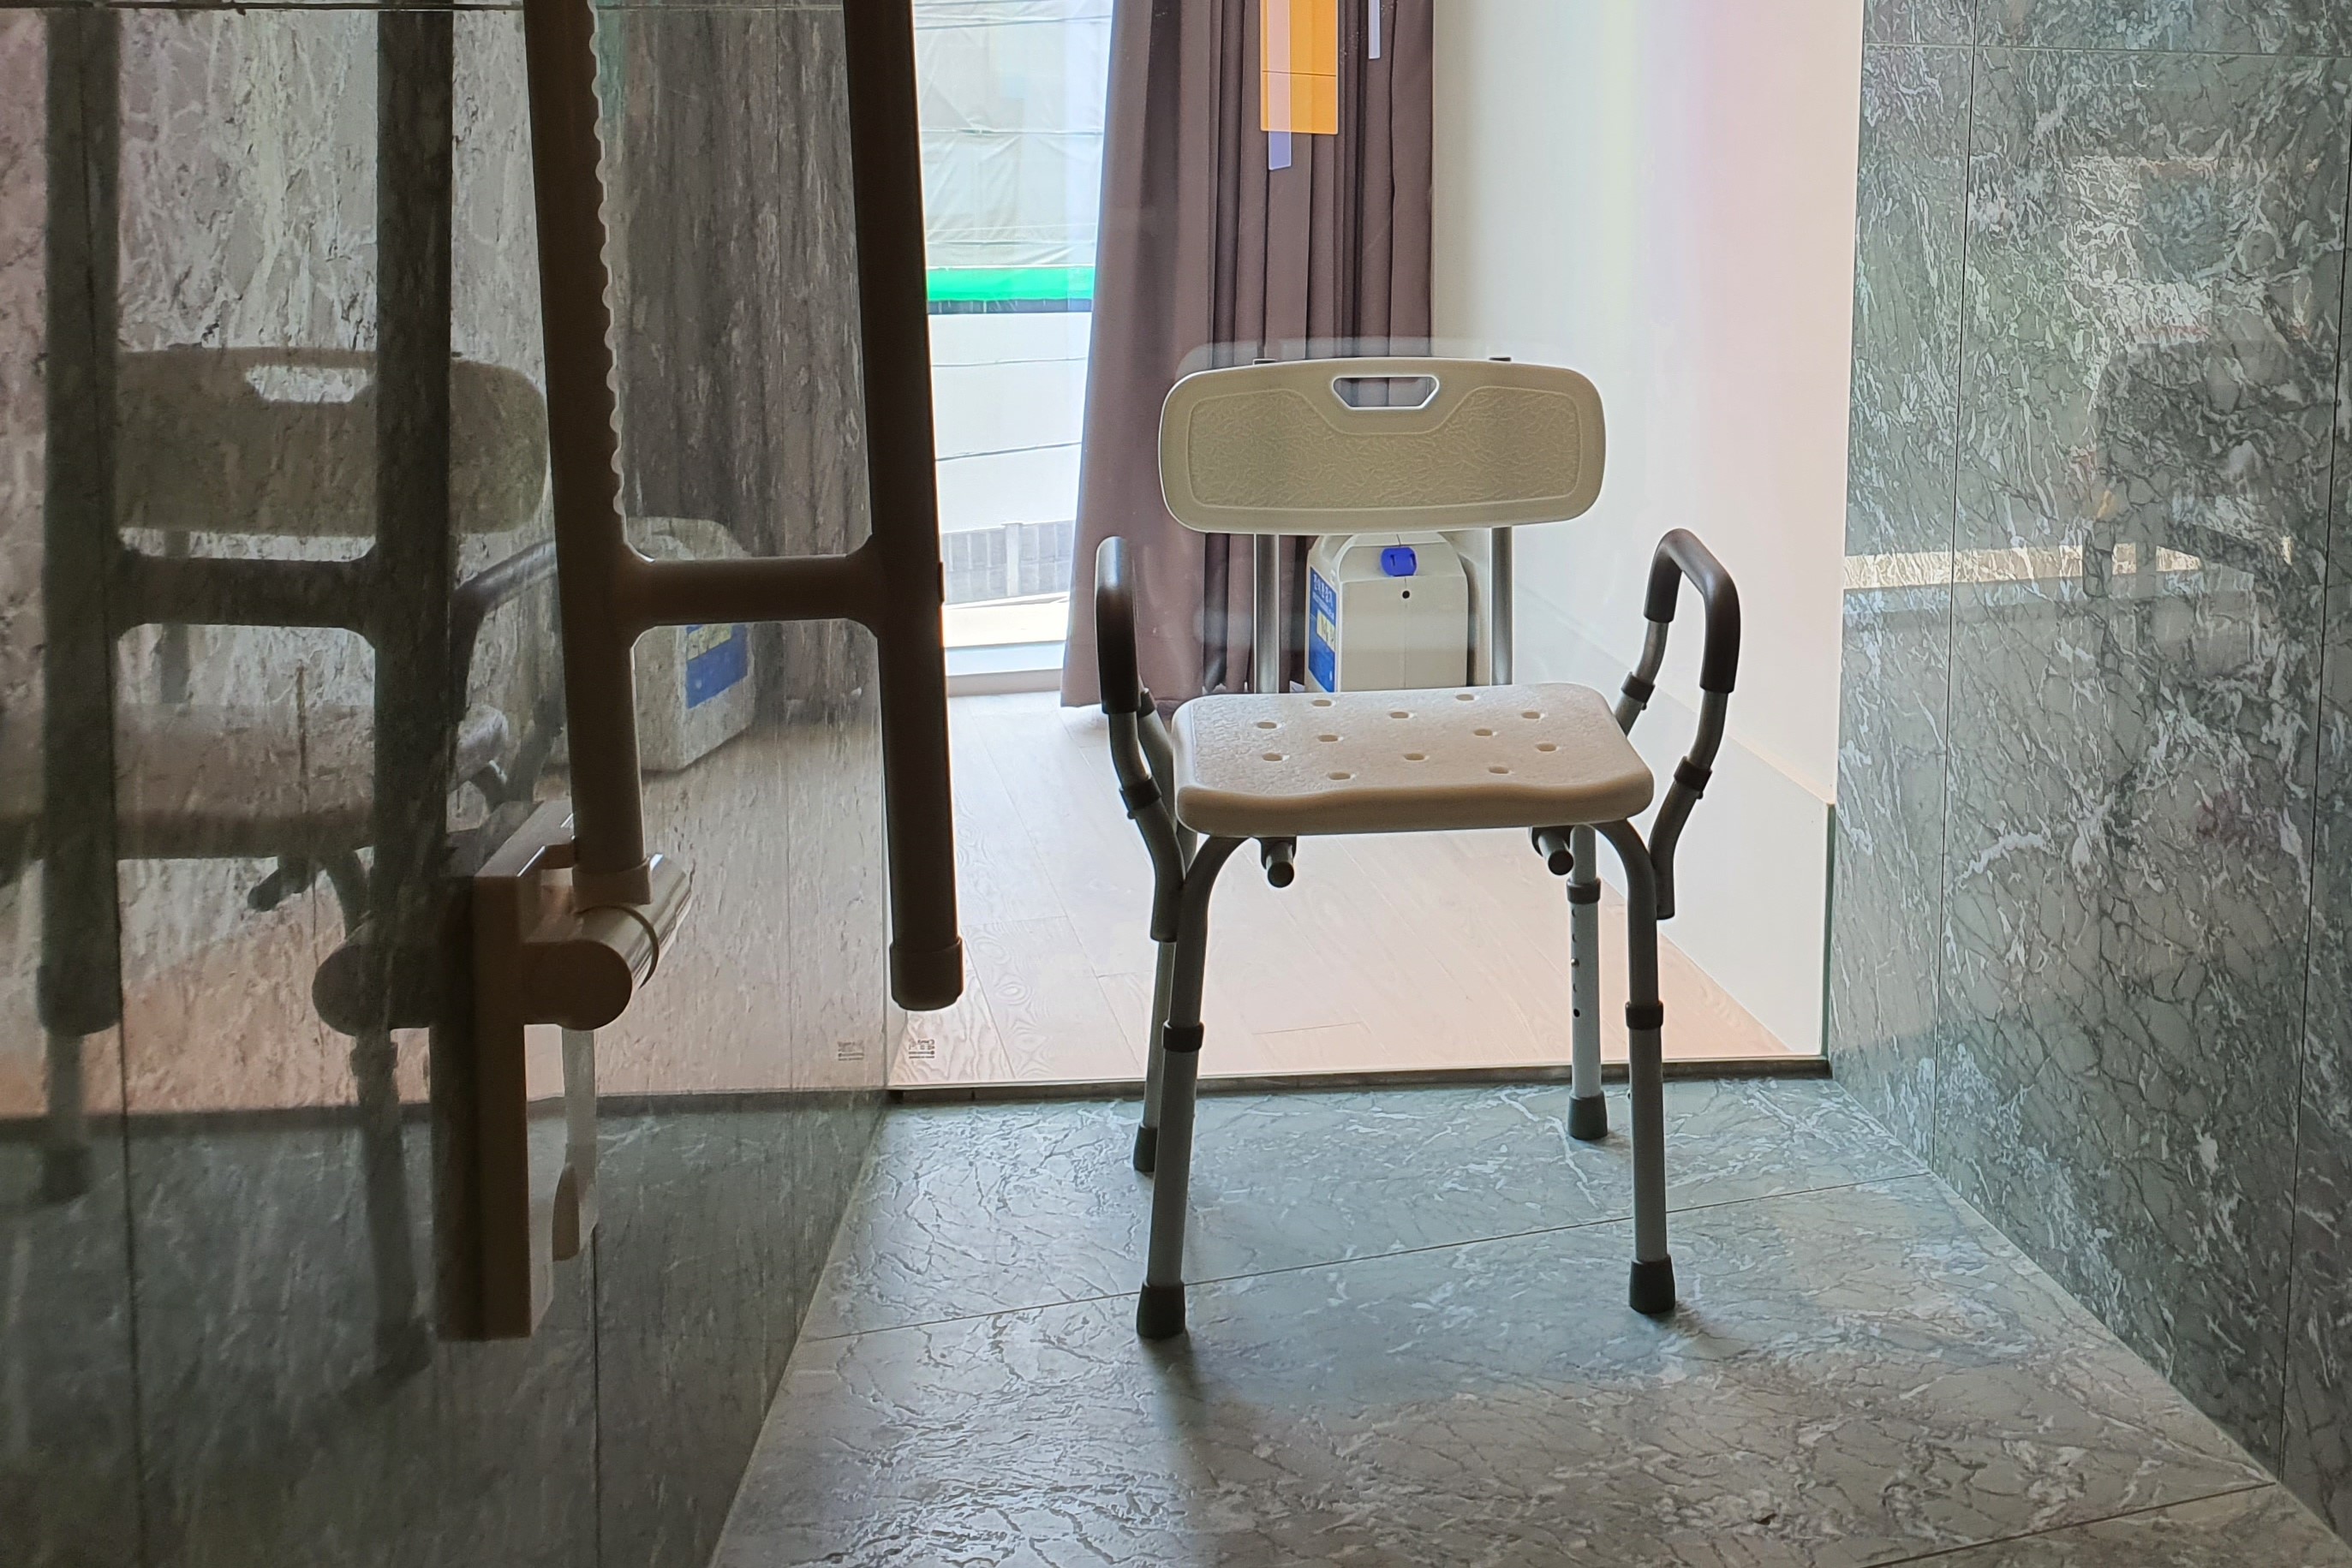 장애인 객실0 : 화장실에 비치된 샤워 의자